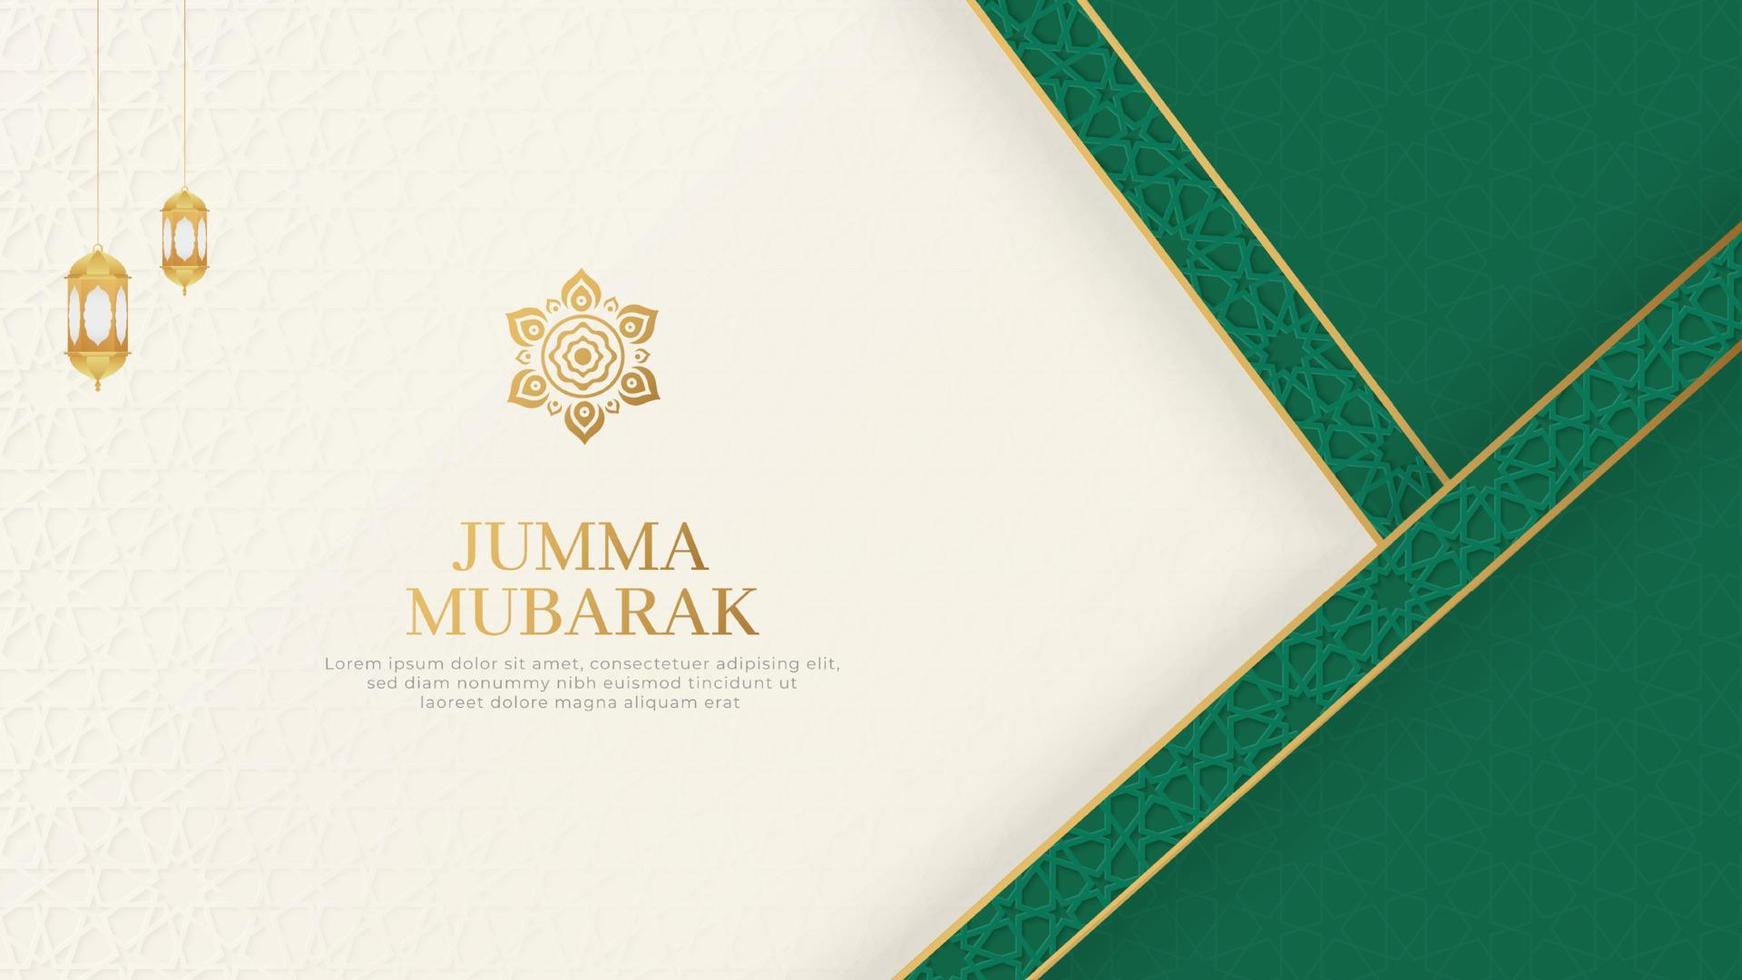 jumma mubarak fond de motif ornemental arabe islamique avec des lanternes et des ornements de style arabe vecteur